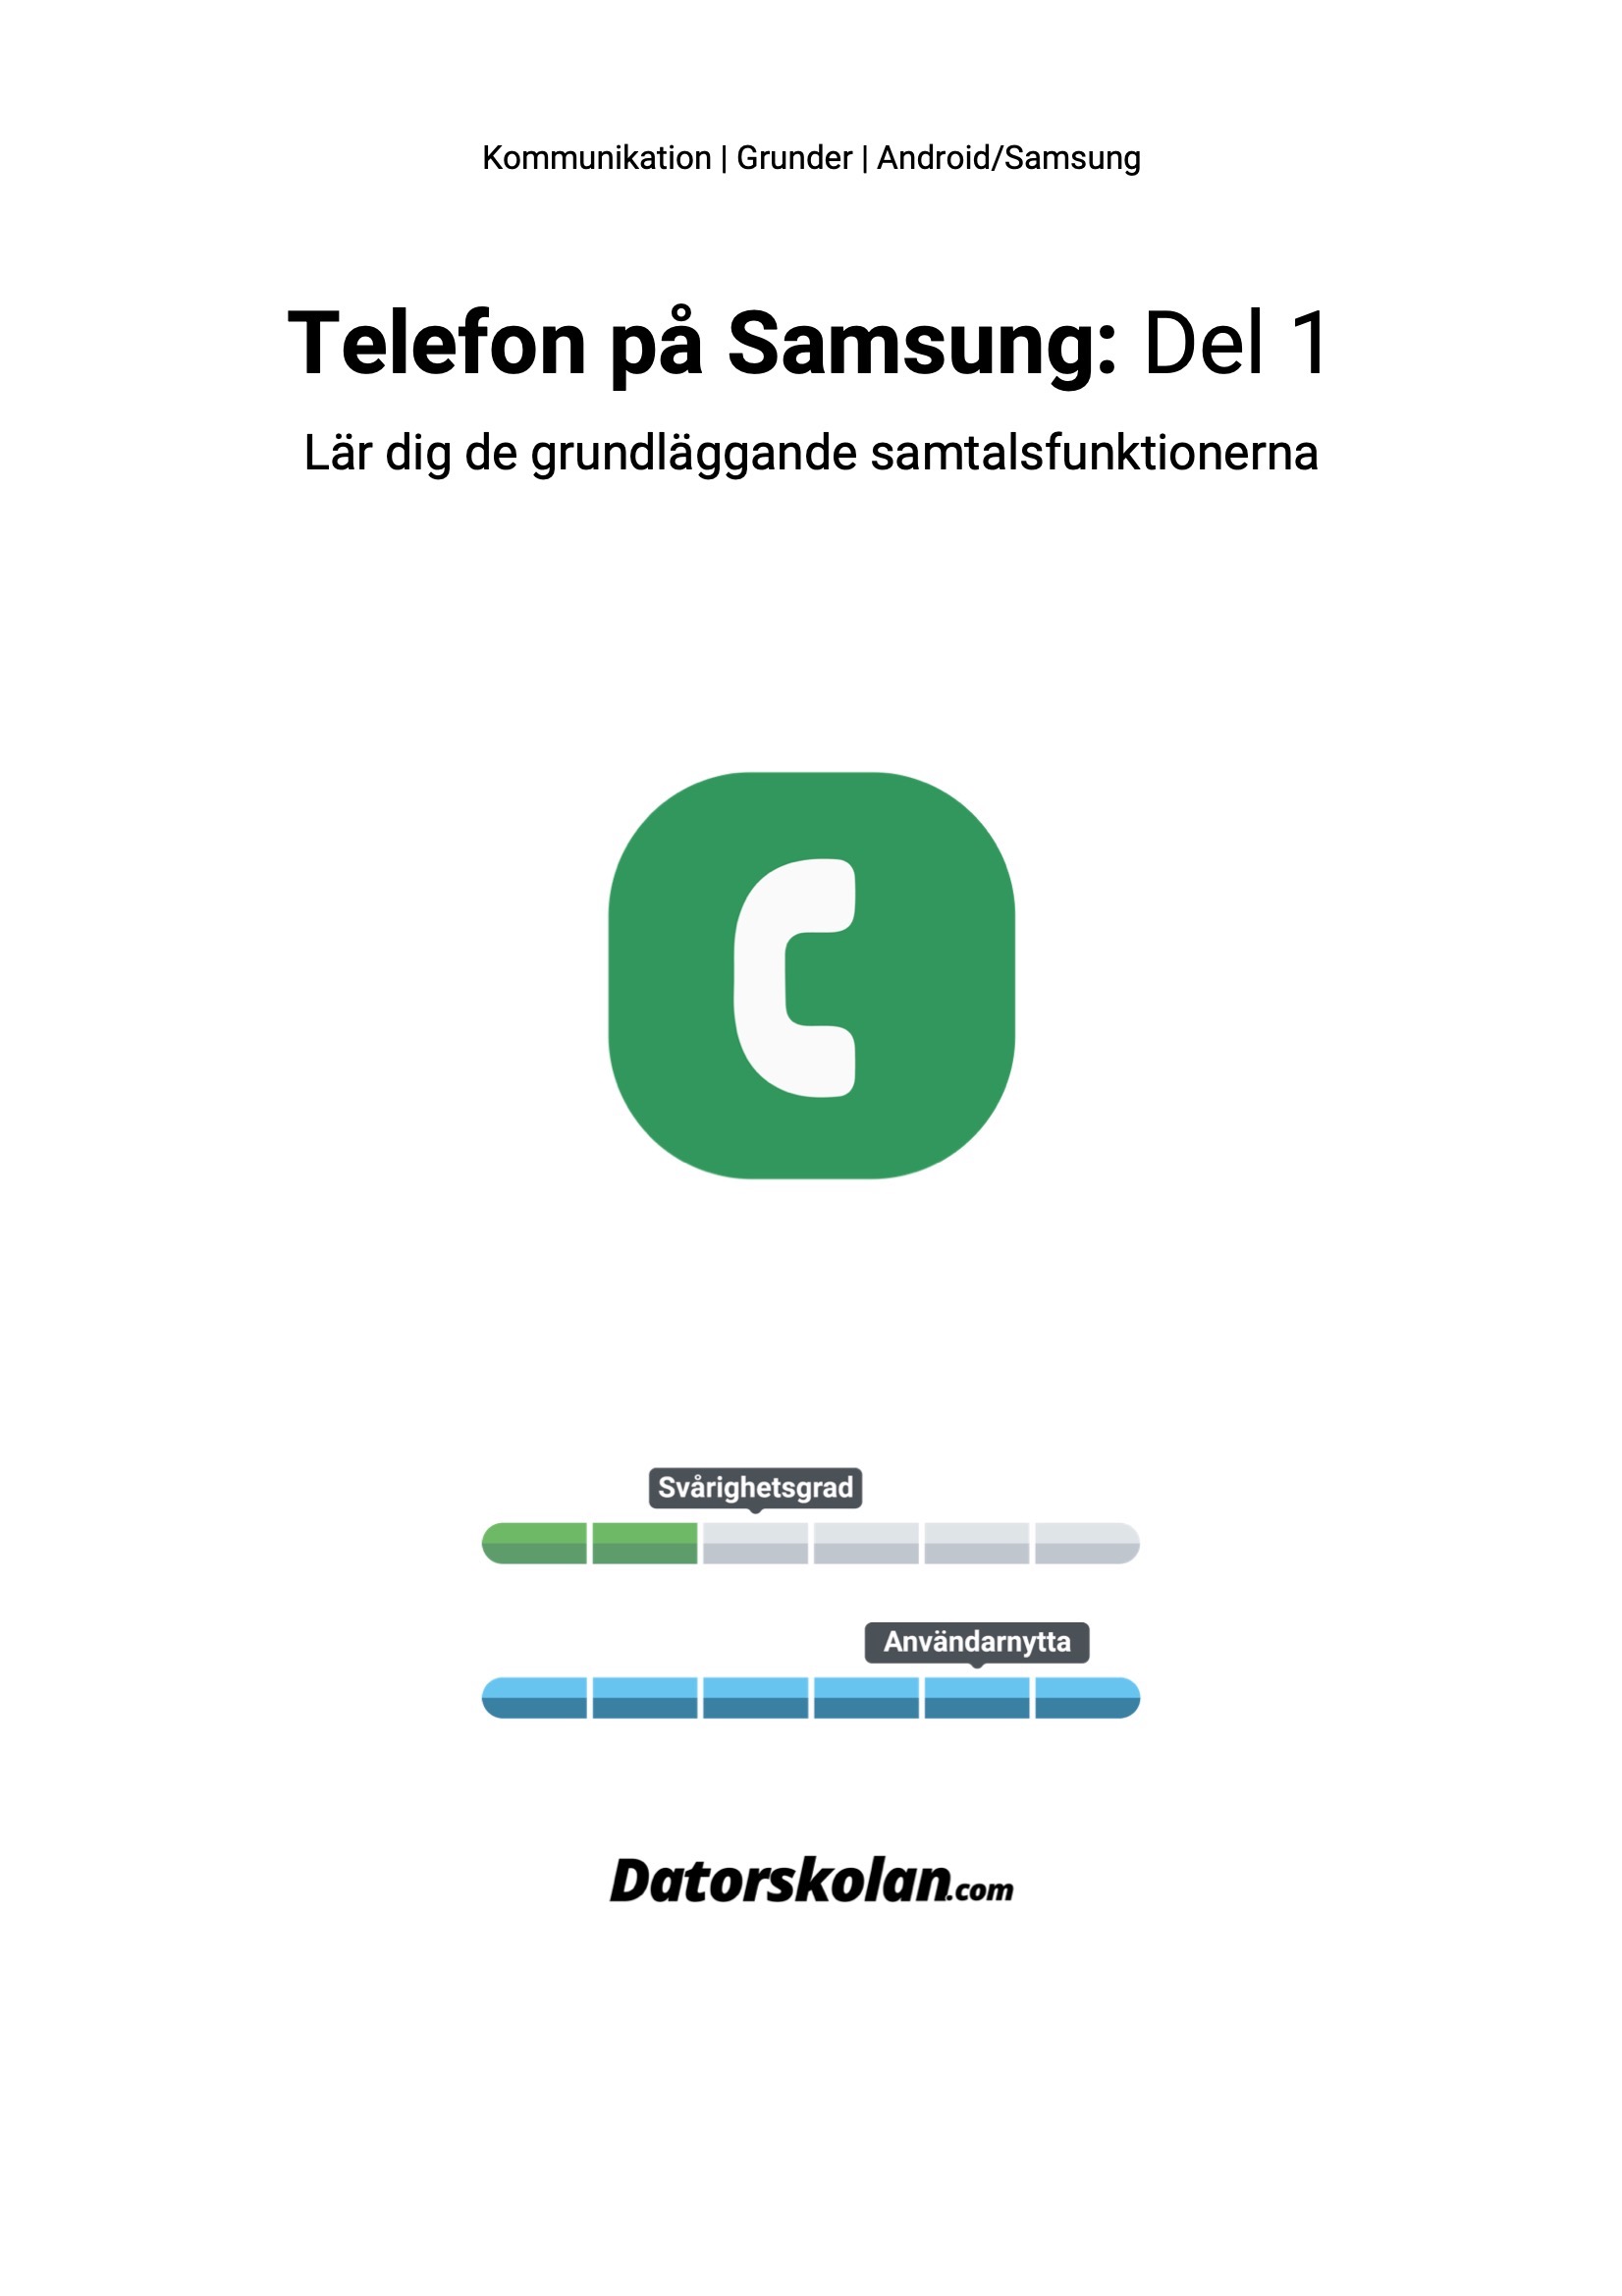 Framsidan av DigiGuiden som handlar om att ringa samtal på Samsung-telefoner